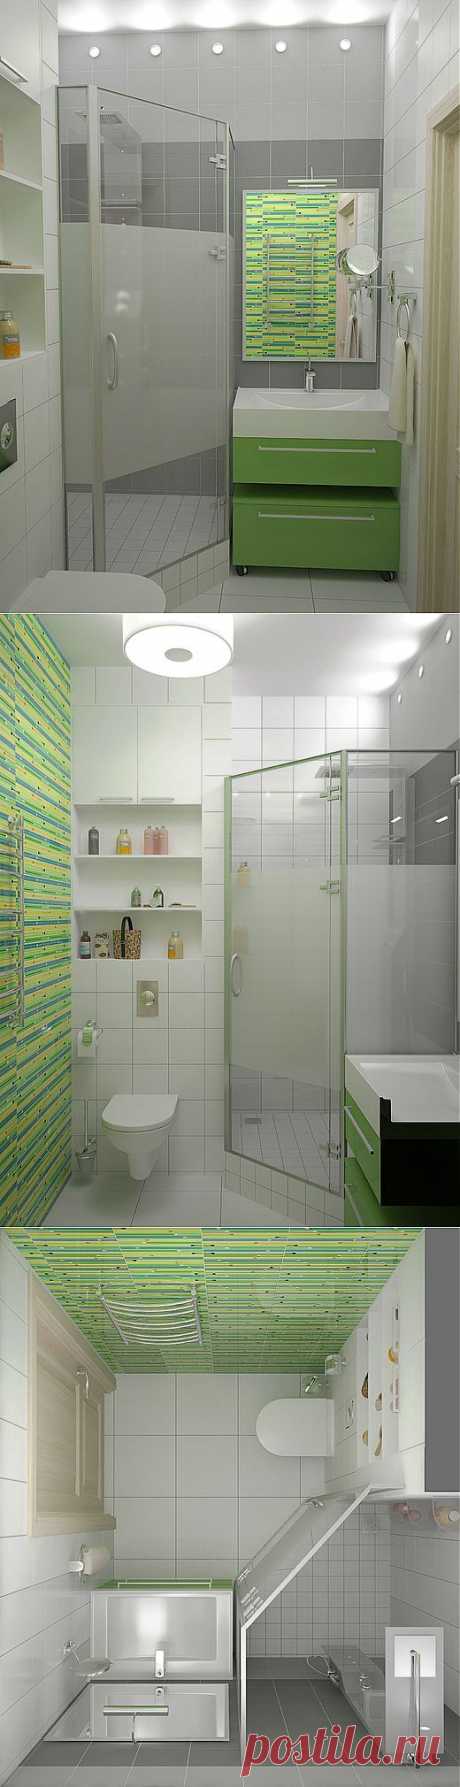 Акценты на зелёном.
Когда твоя ванная очень мала, а хочется сделать её и красивой и удобной.